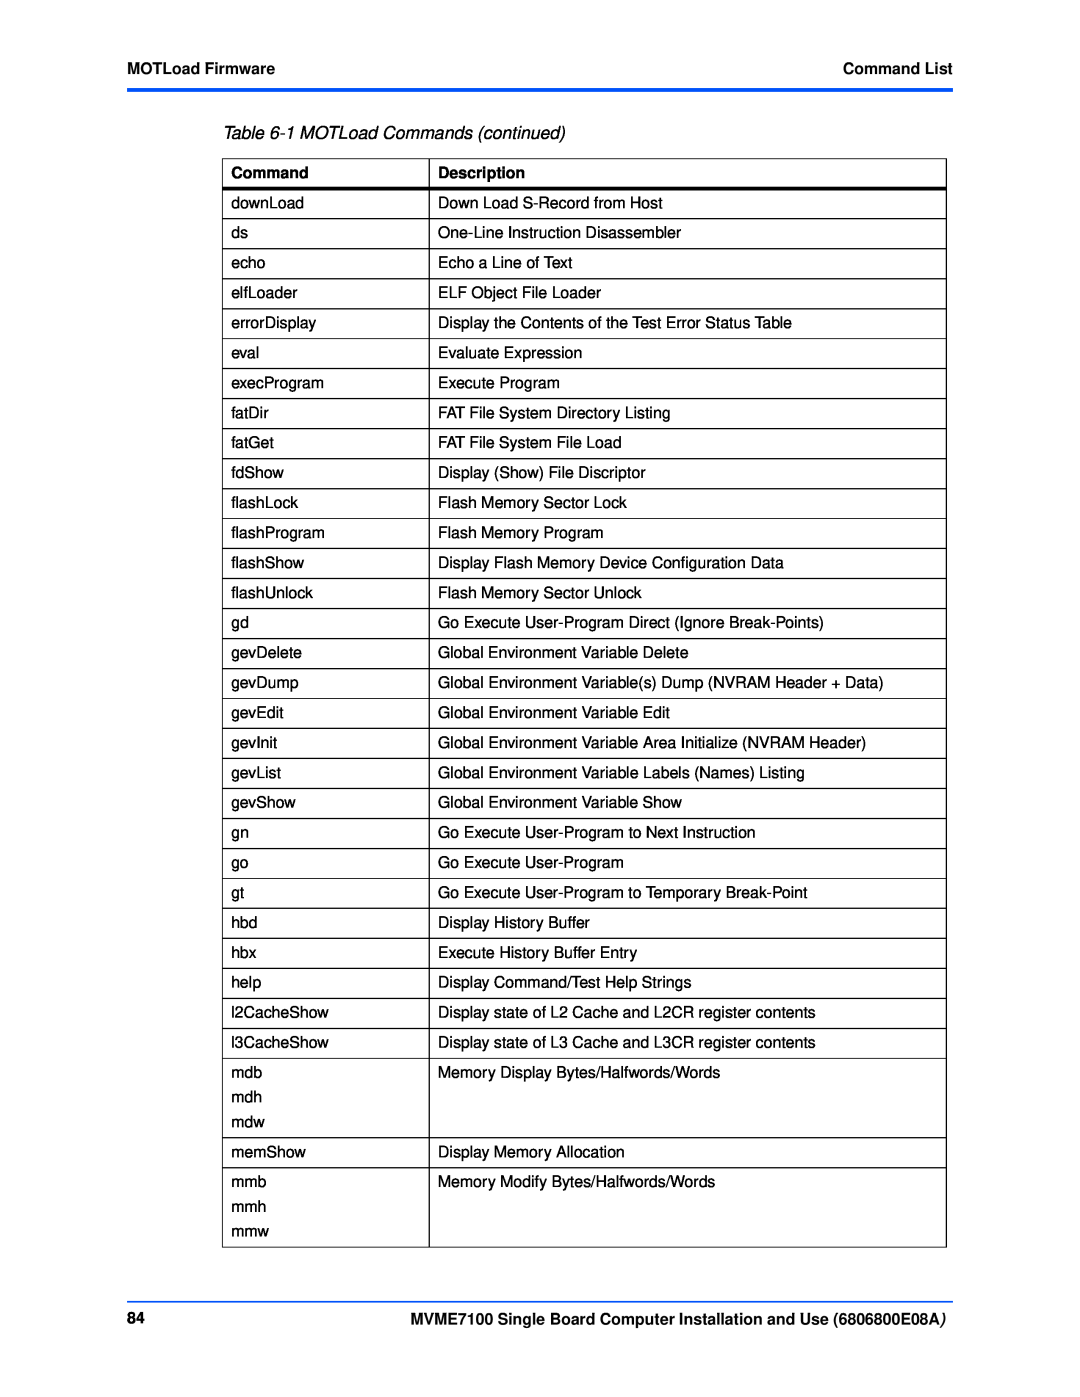 Emerson MVME7100 manual 1 MOTLoad Commands continued, MOTLoad FirmwareCommand List, Description 